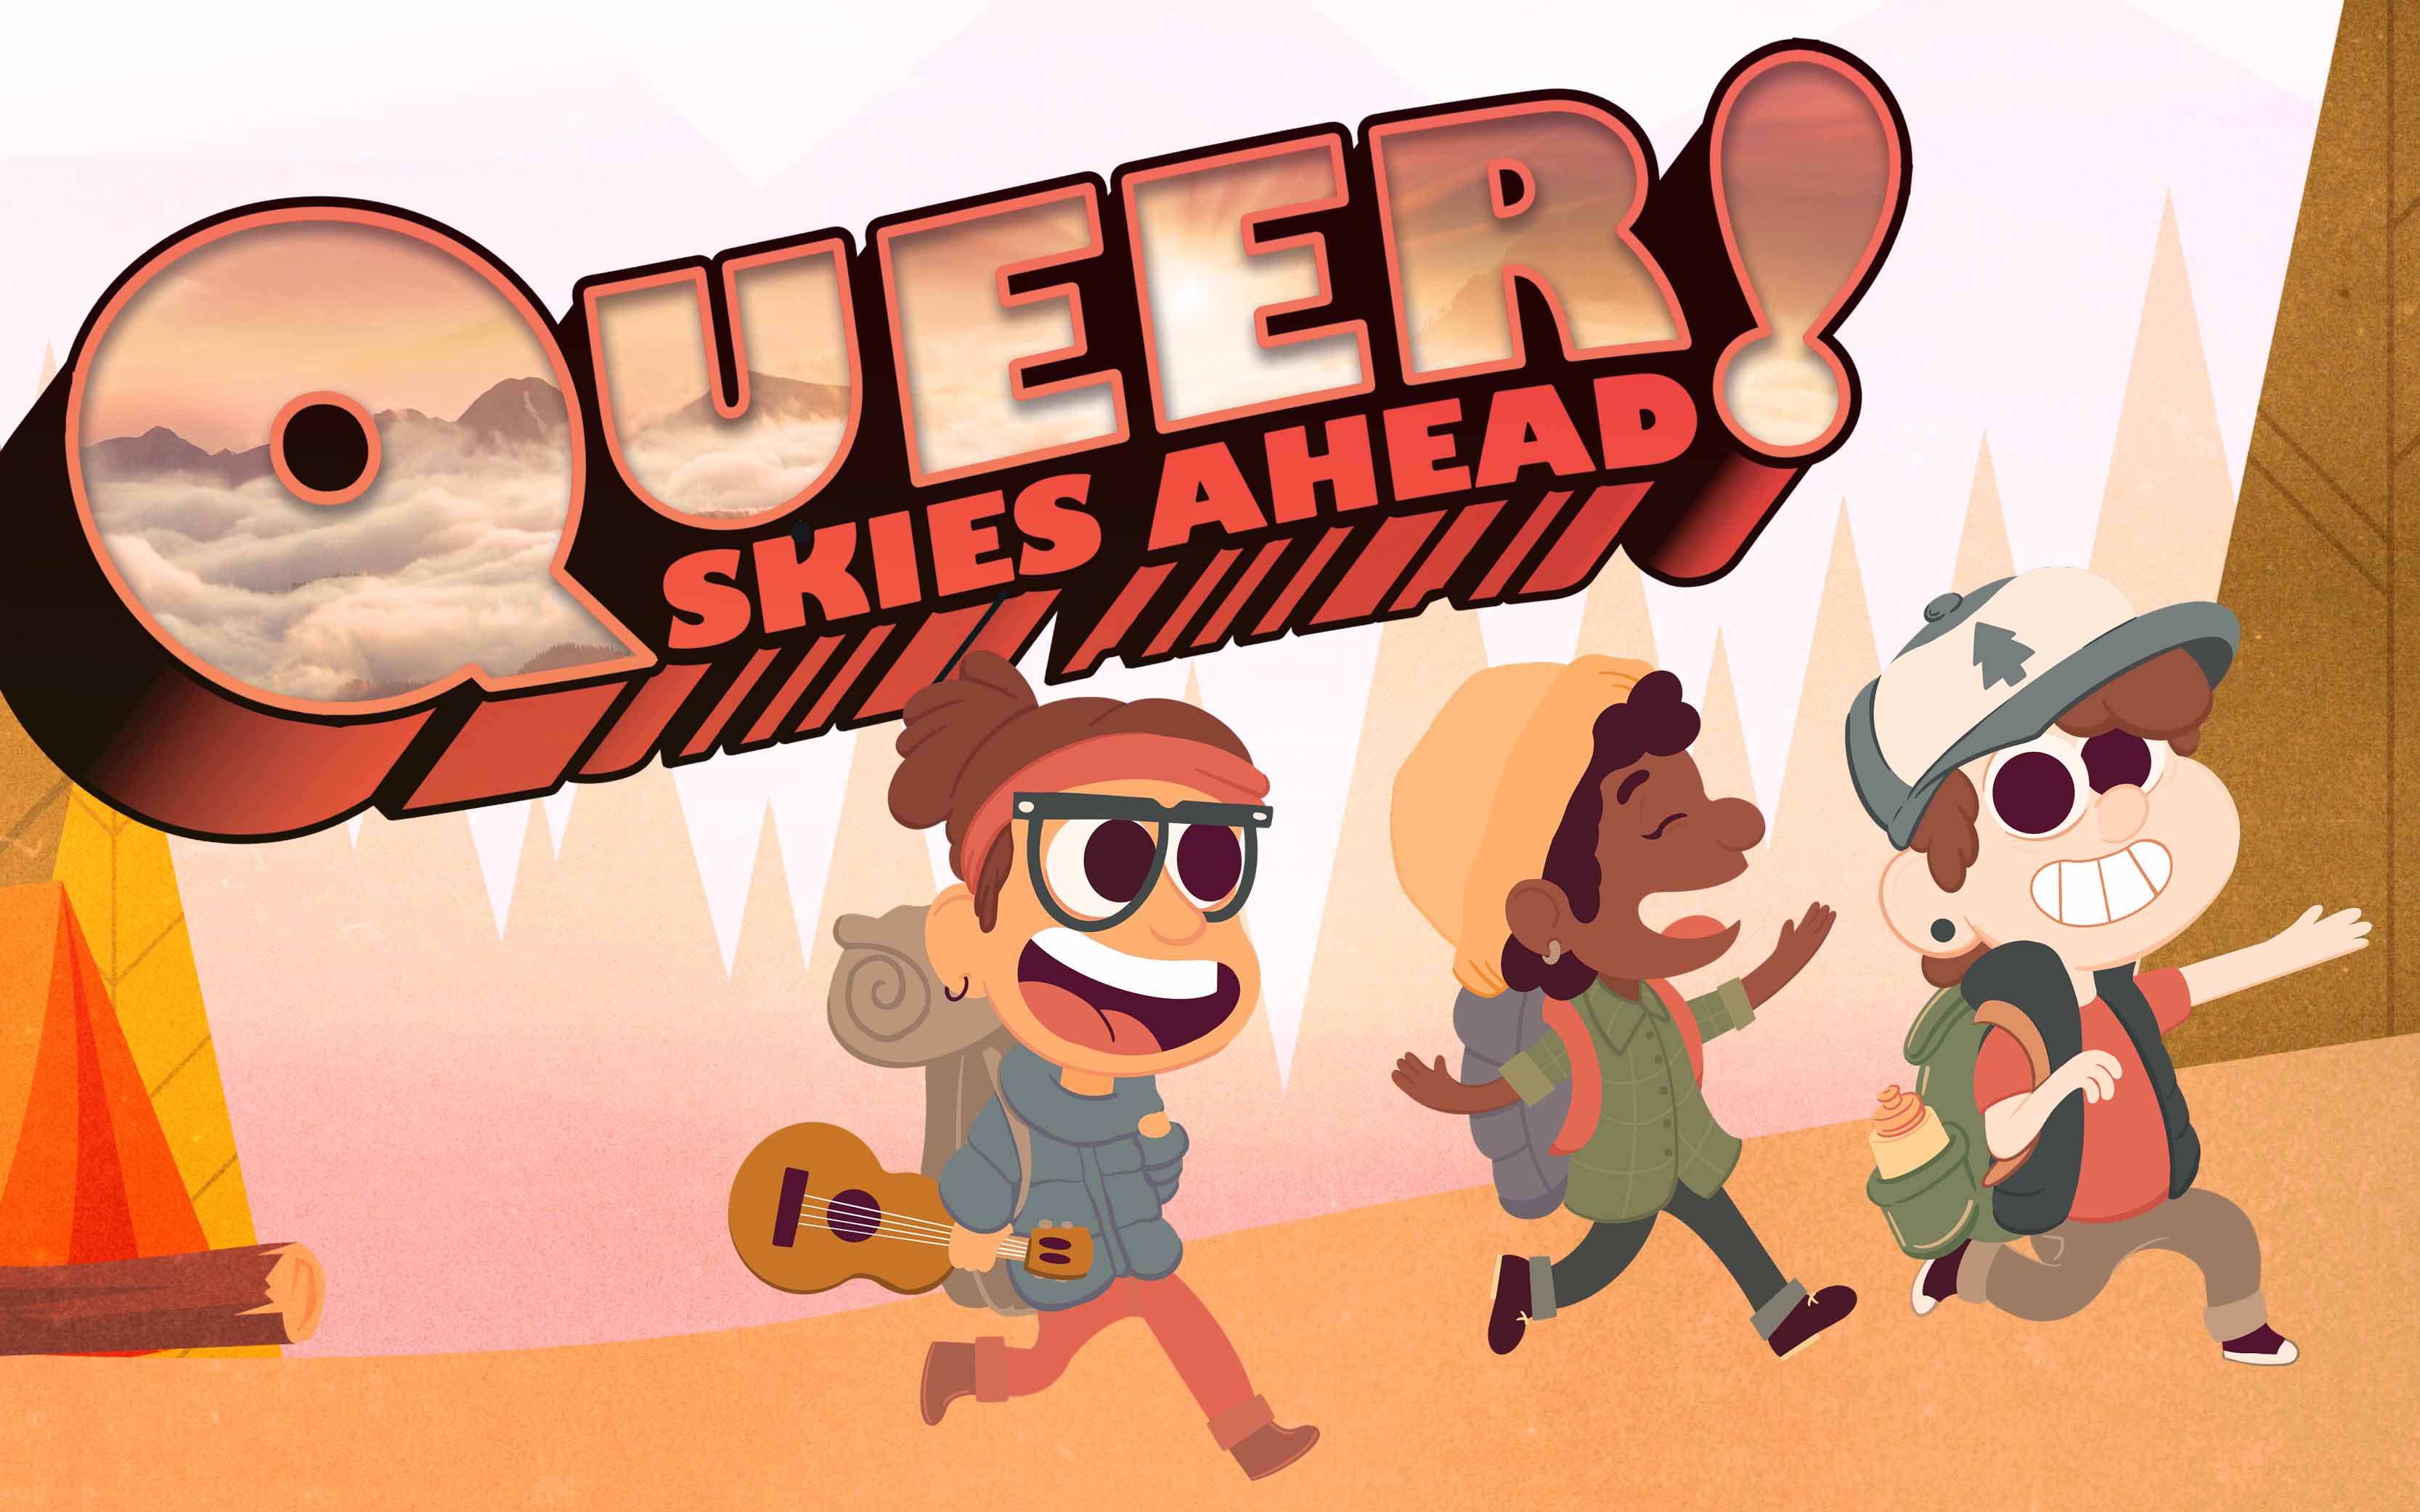 Queer Skies Ahead!